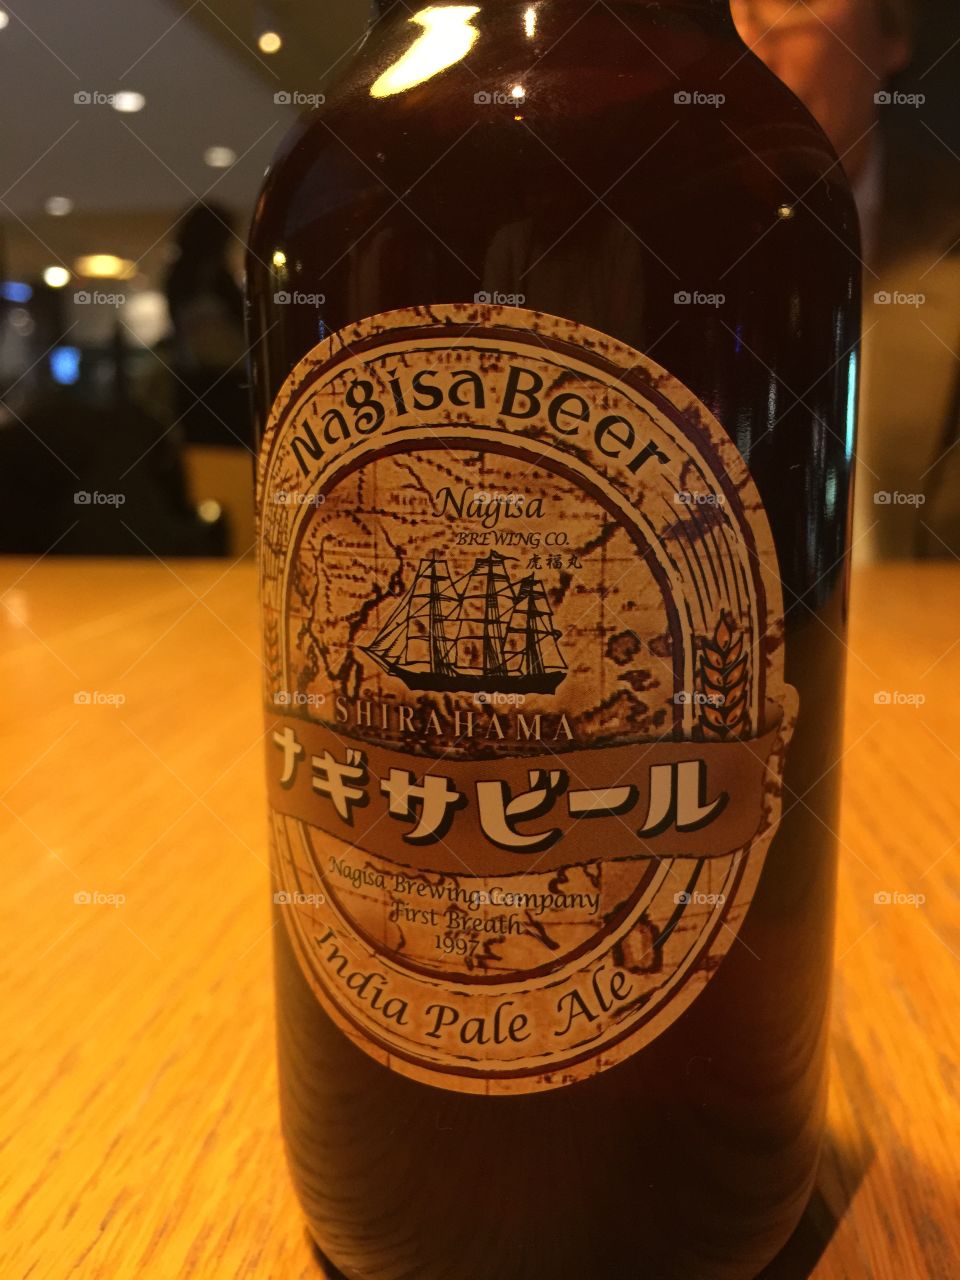 Nagisa beer ( Japanese  craftbeer )